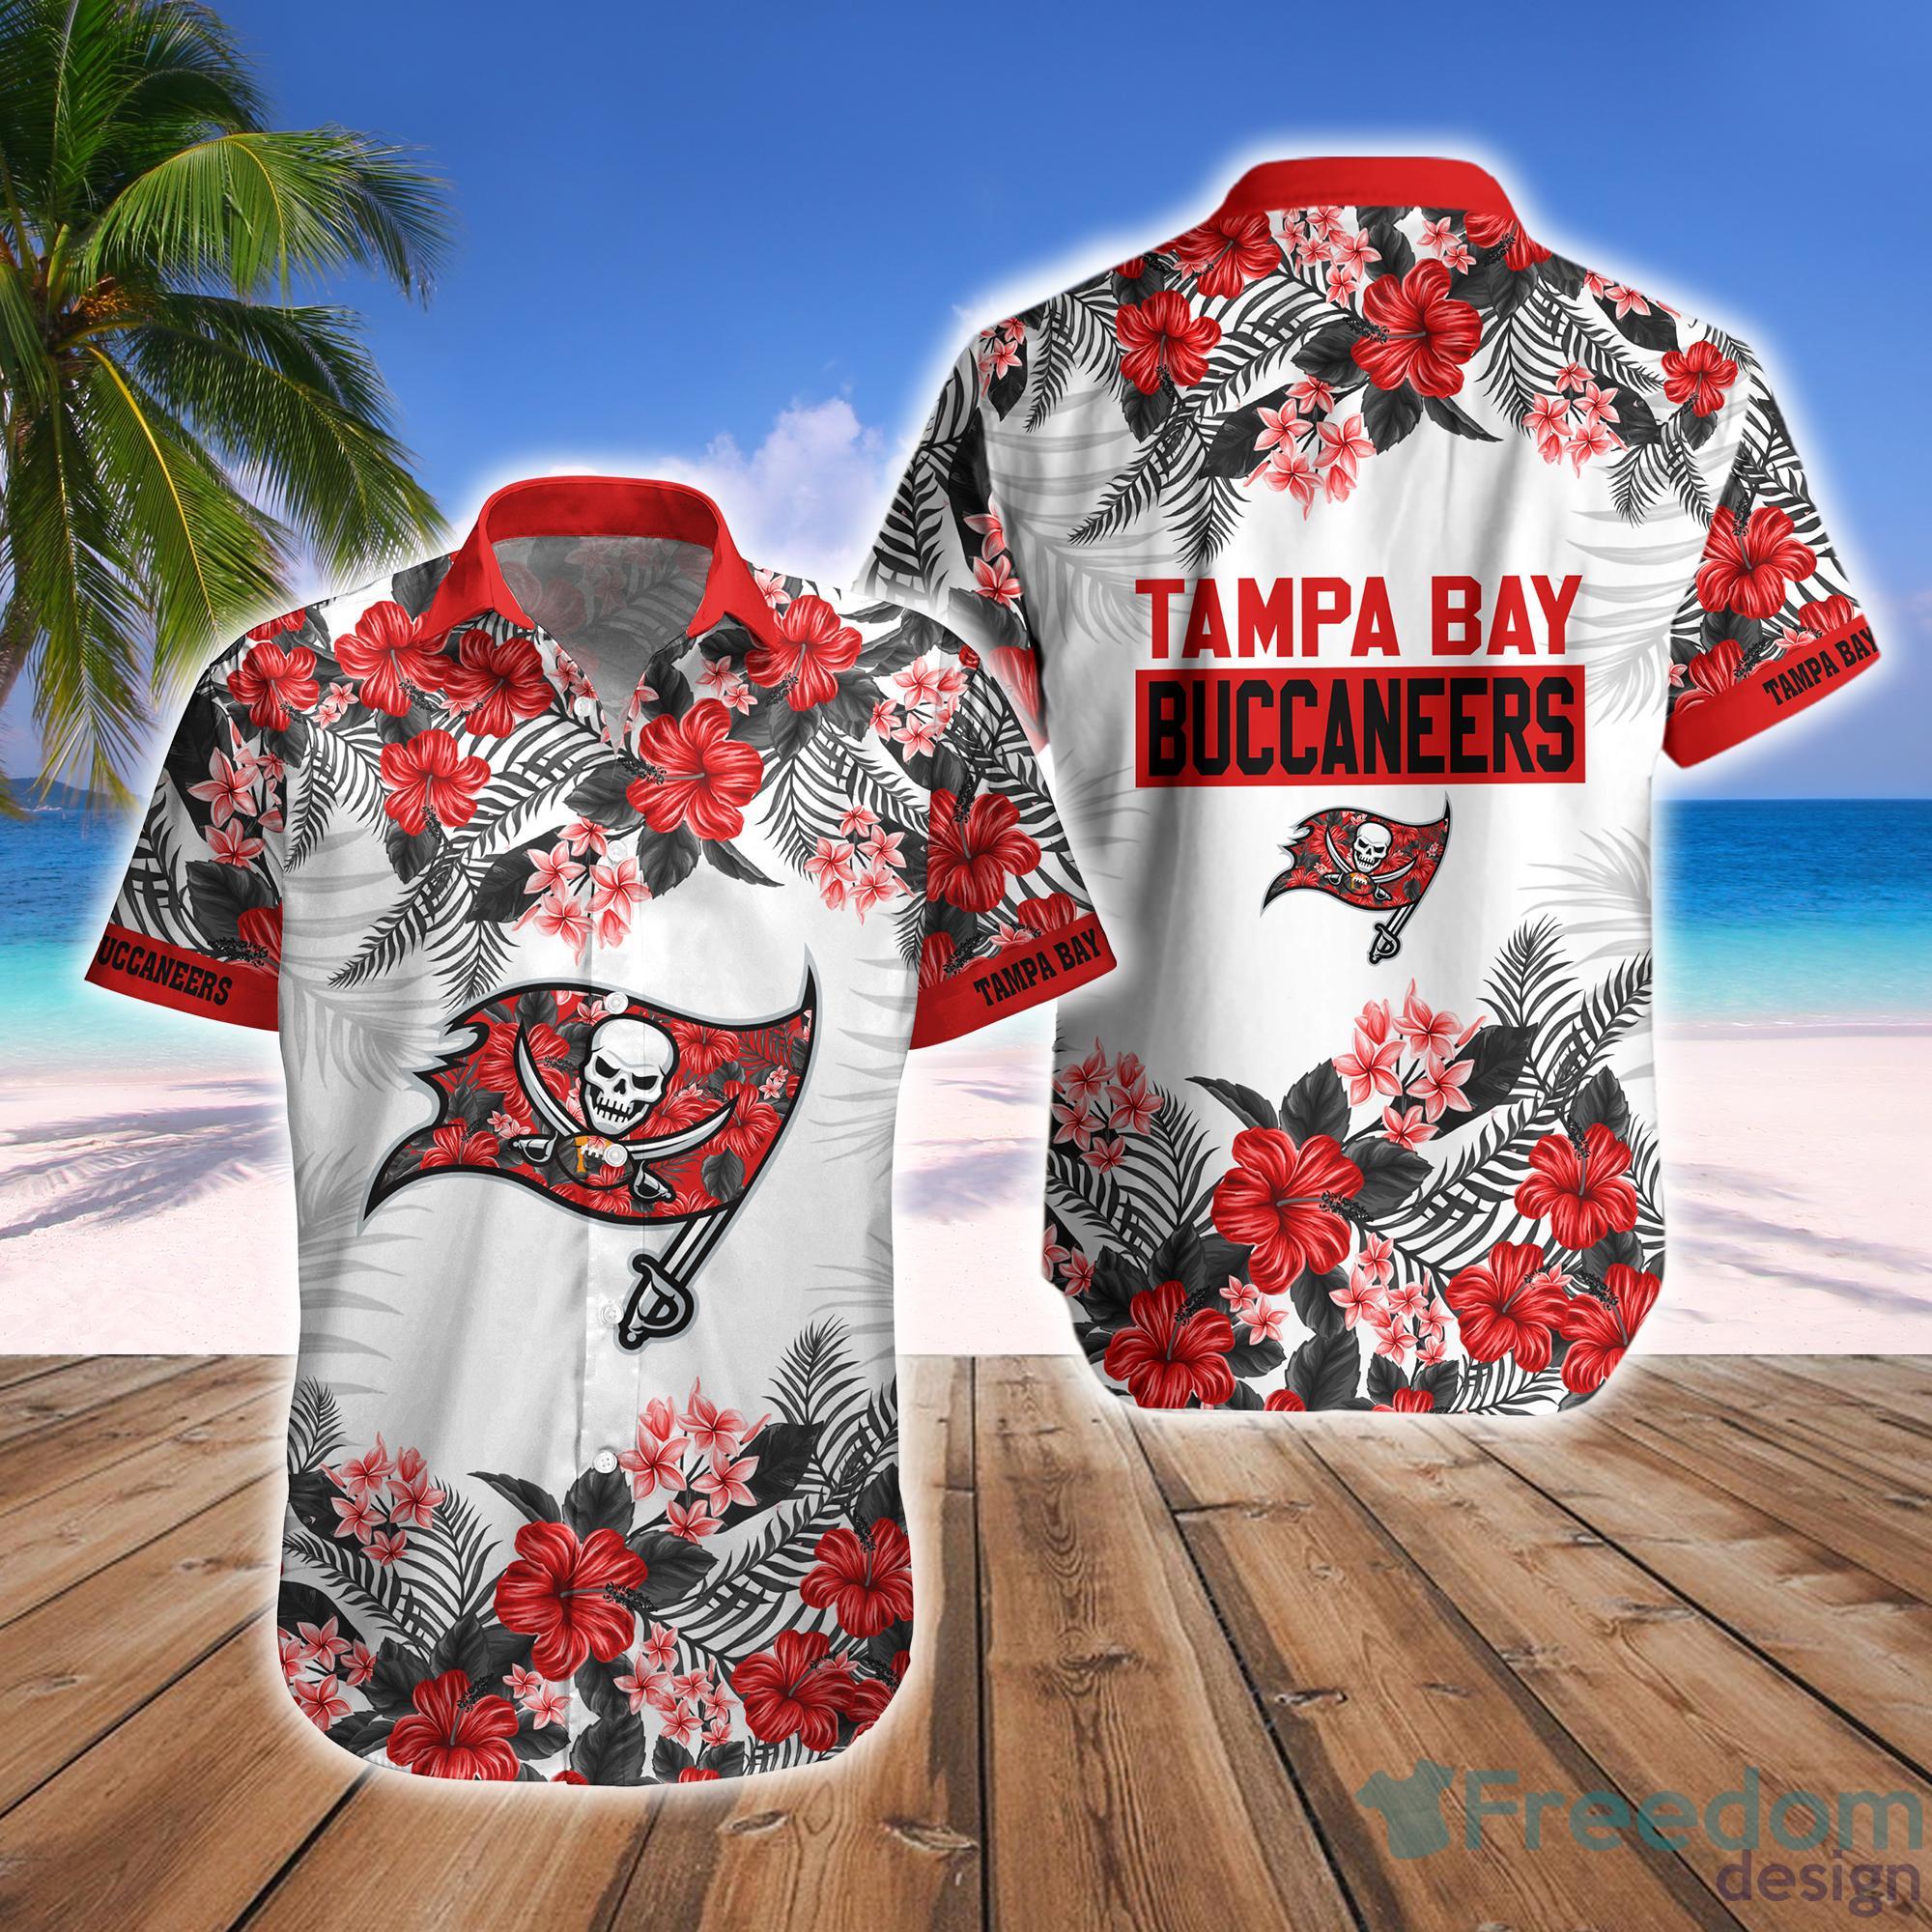 Tampa Bay Sport Teams Hawaiian Buccaneers Tampa Bay Rays Tampa Bay